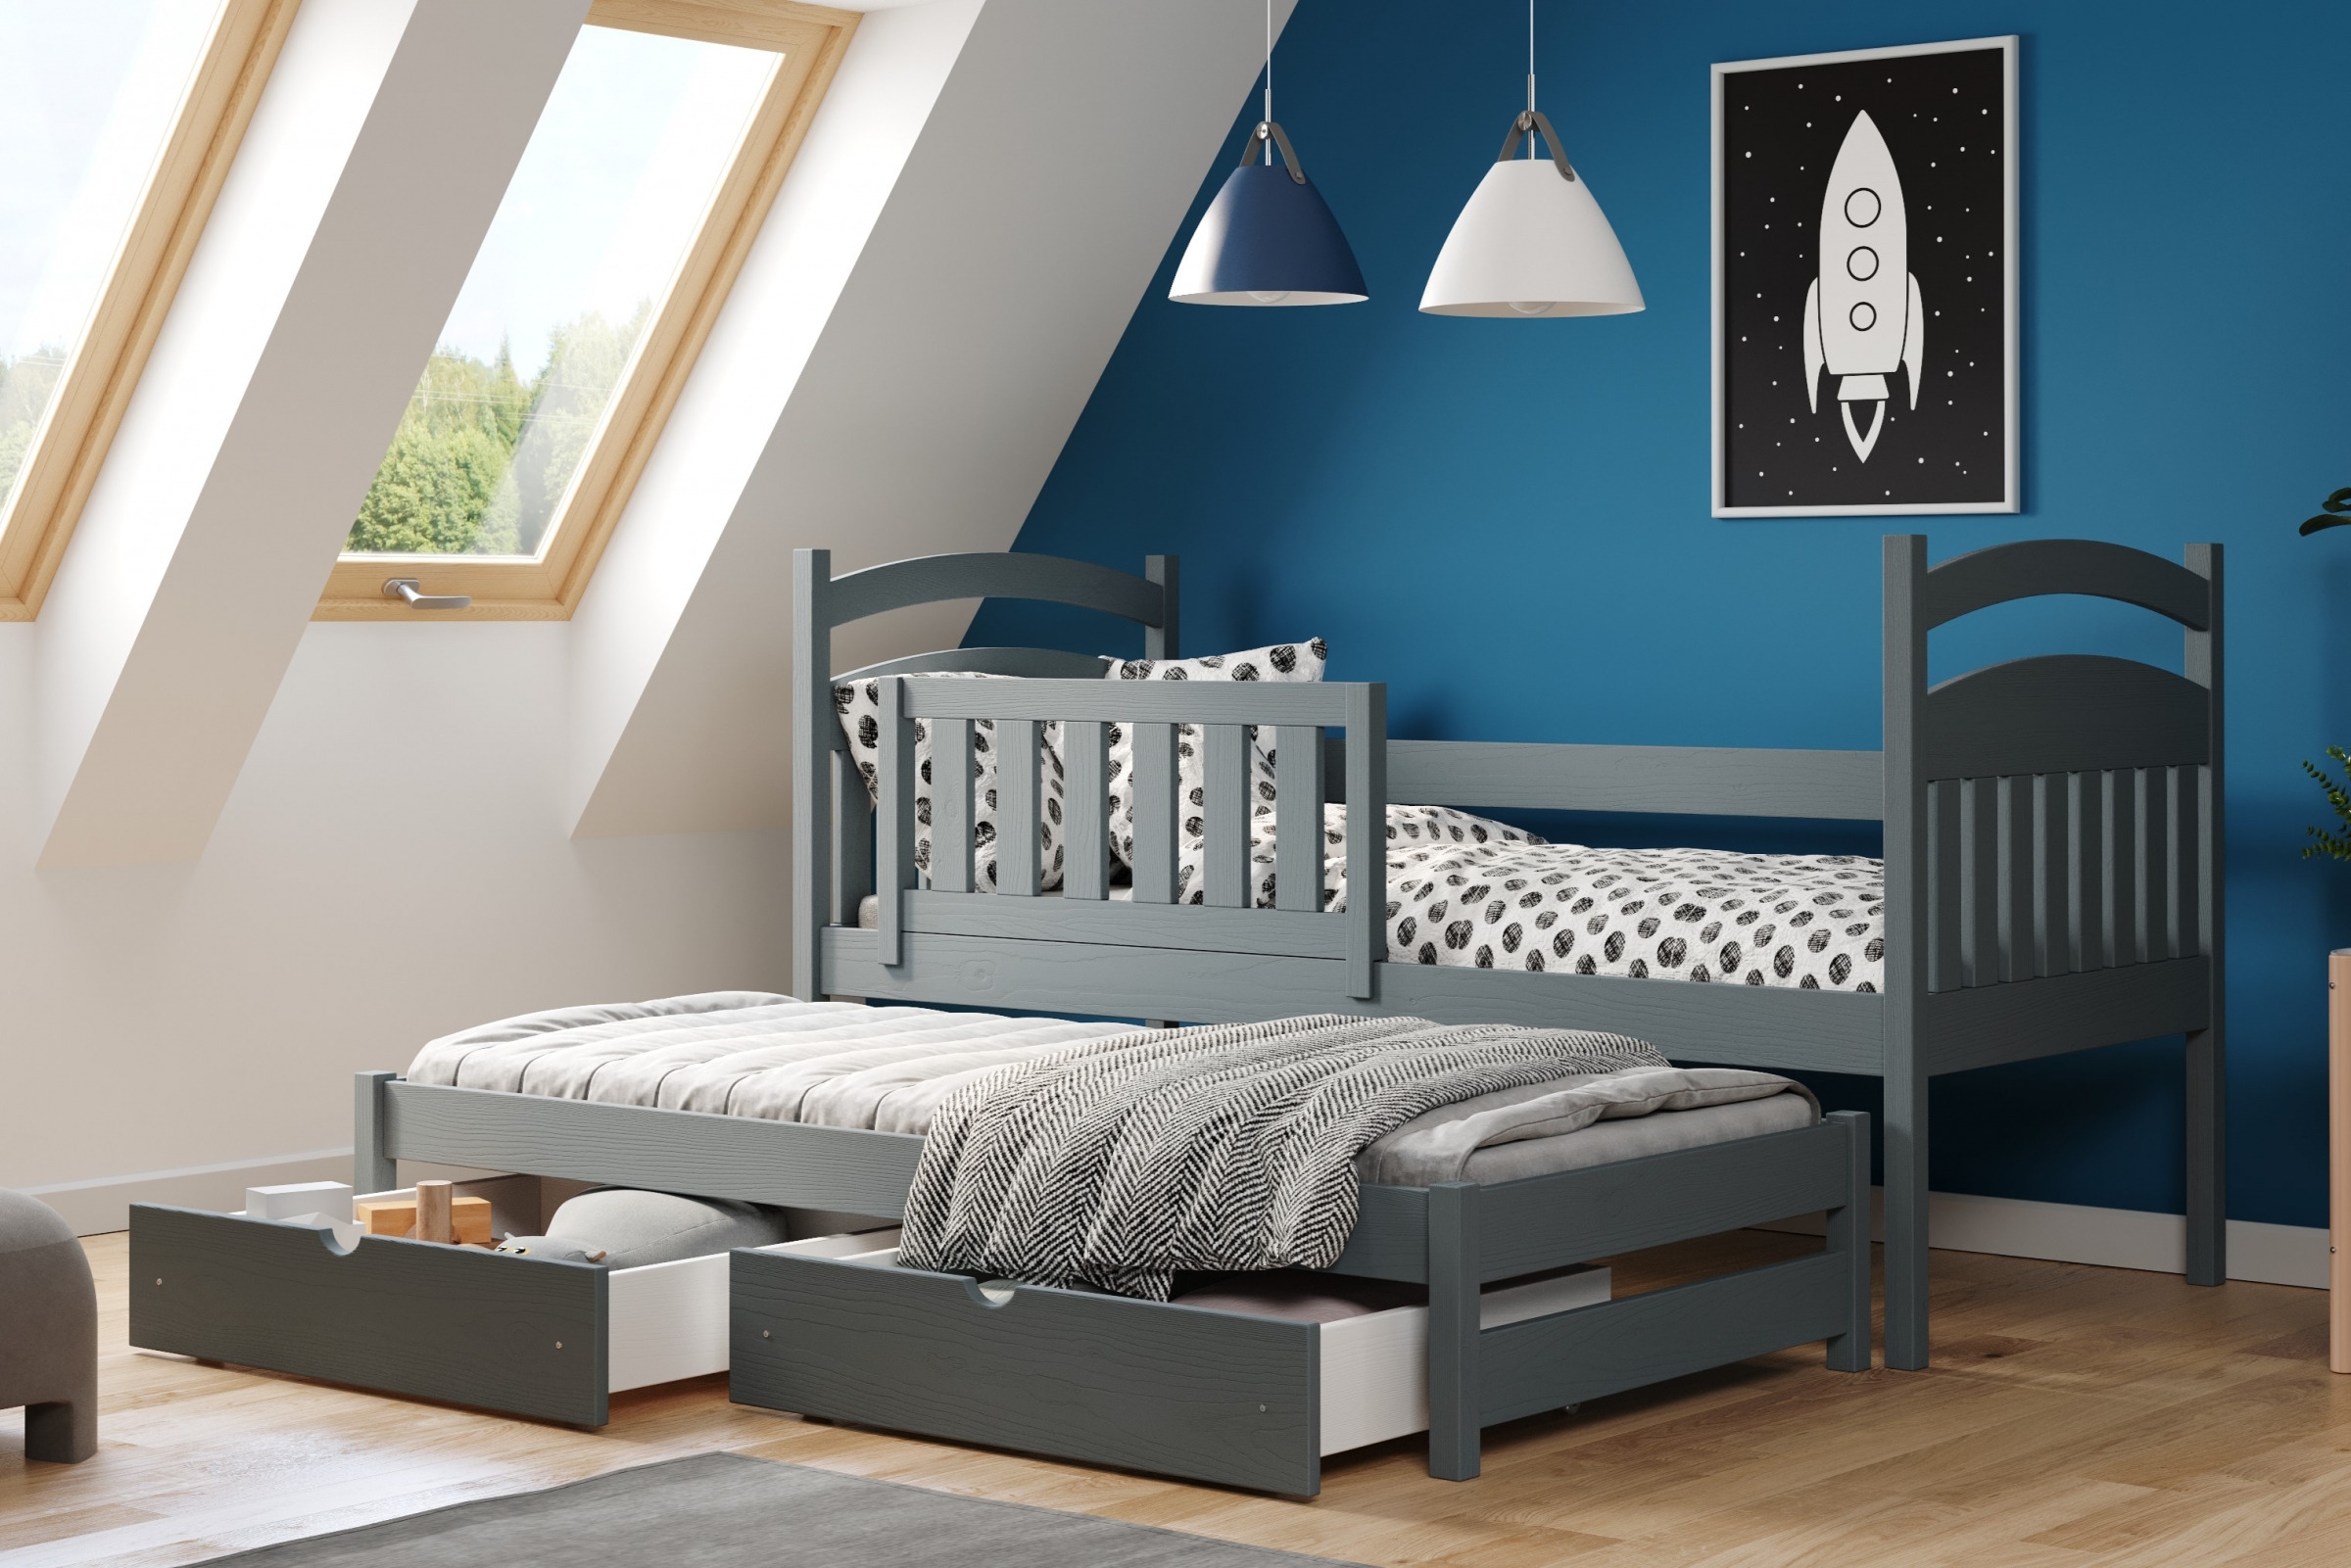 Detská posteľ prízemná výsuvna Amely - Farba grafit, rozmer 80x180 Posteľ dzieciece prízemná s výsuvným lôžkom Amely - Farba grafit - vizualizácia